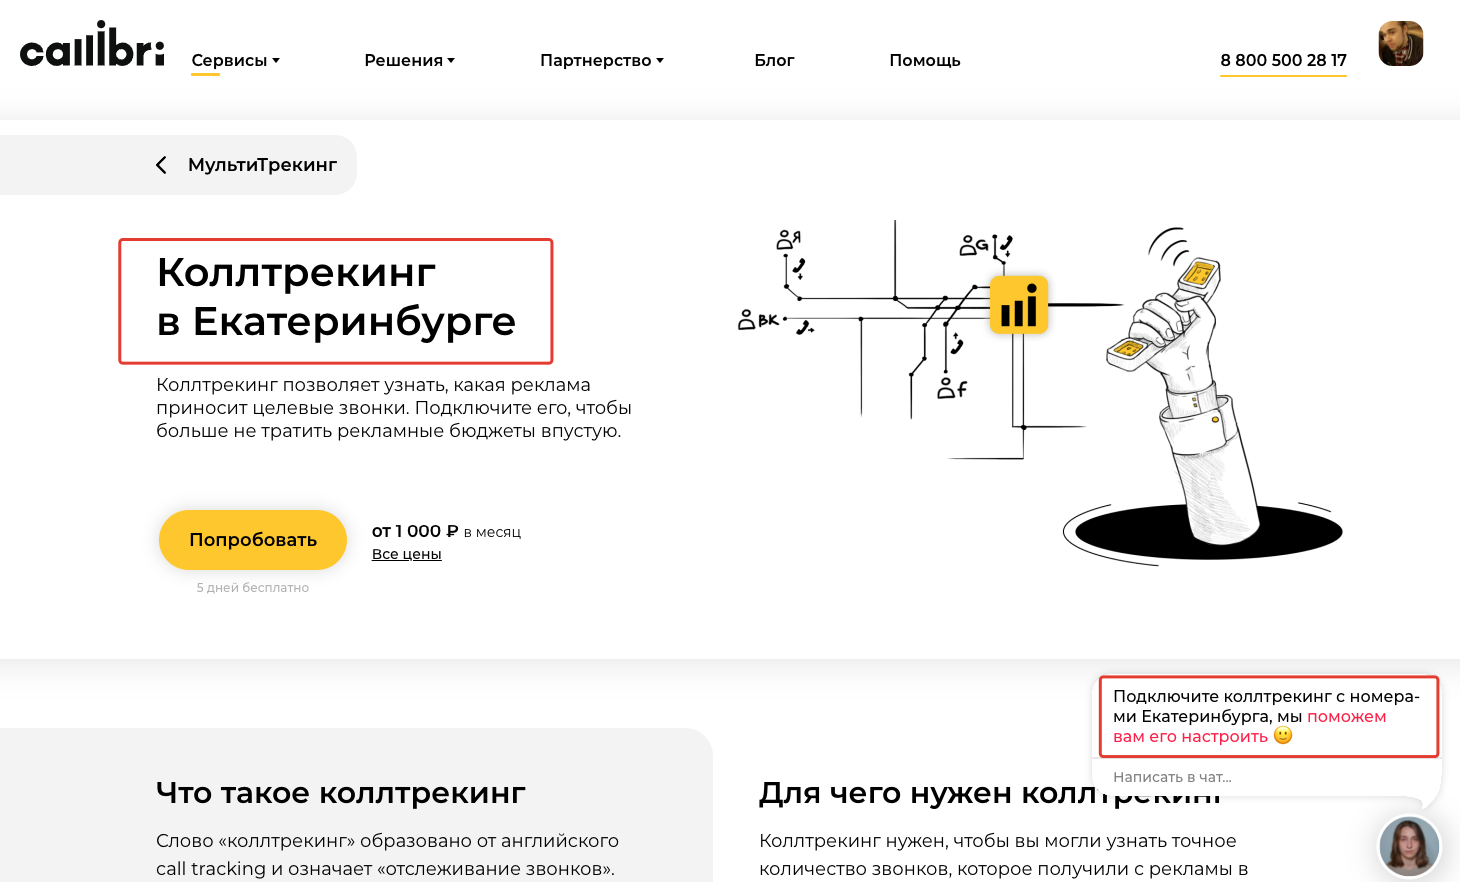 Пример персонализации по поисковому запросу «коллтрекинг в Екатеринбурге»